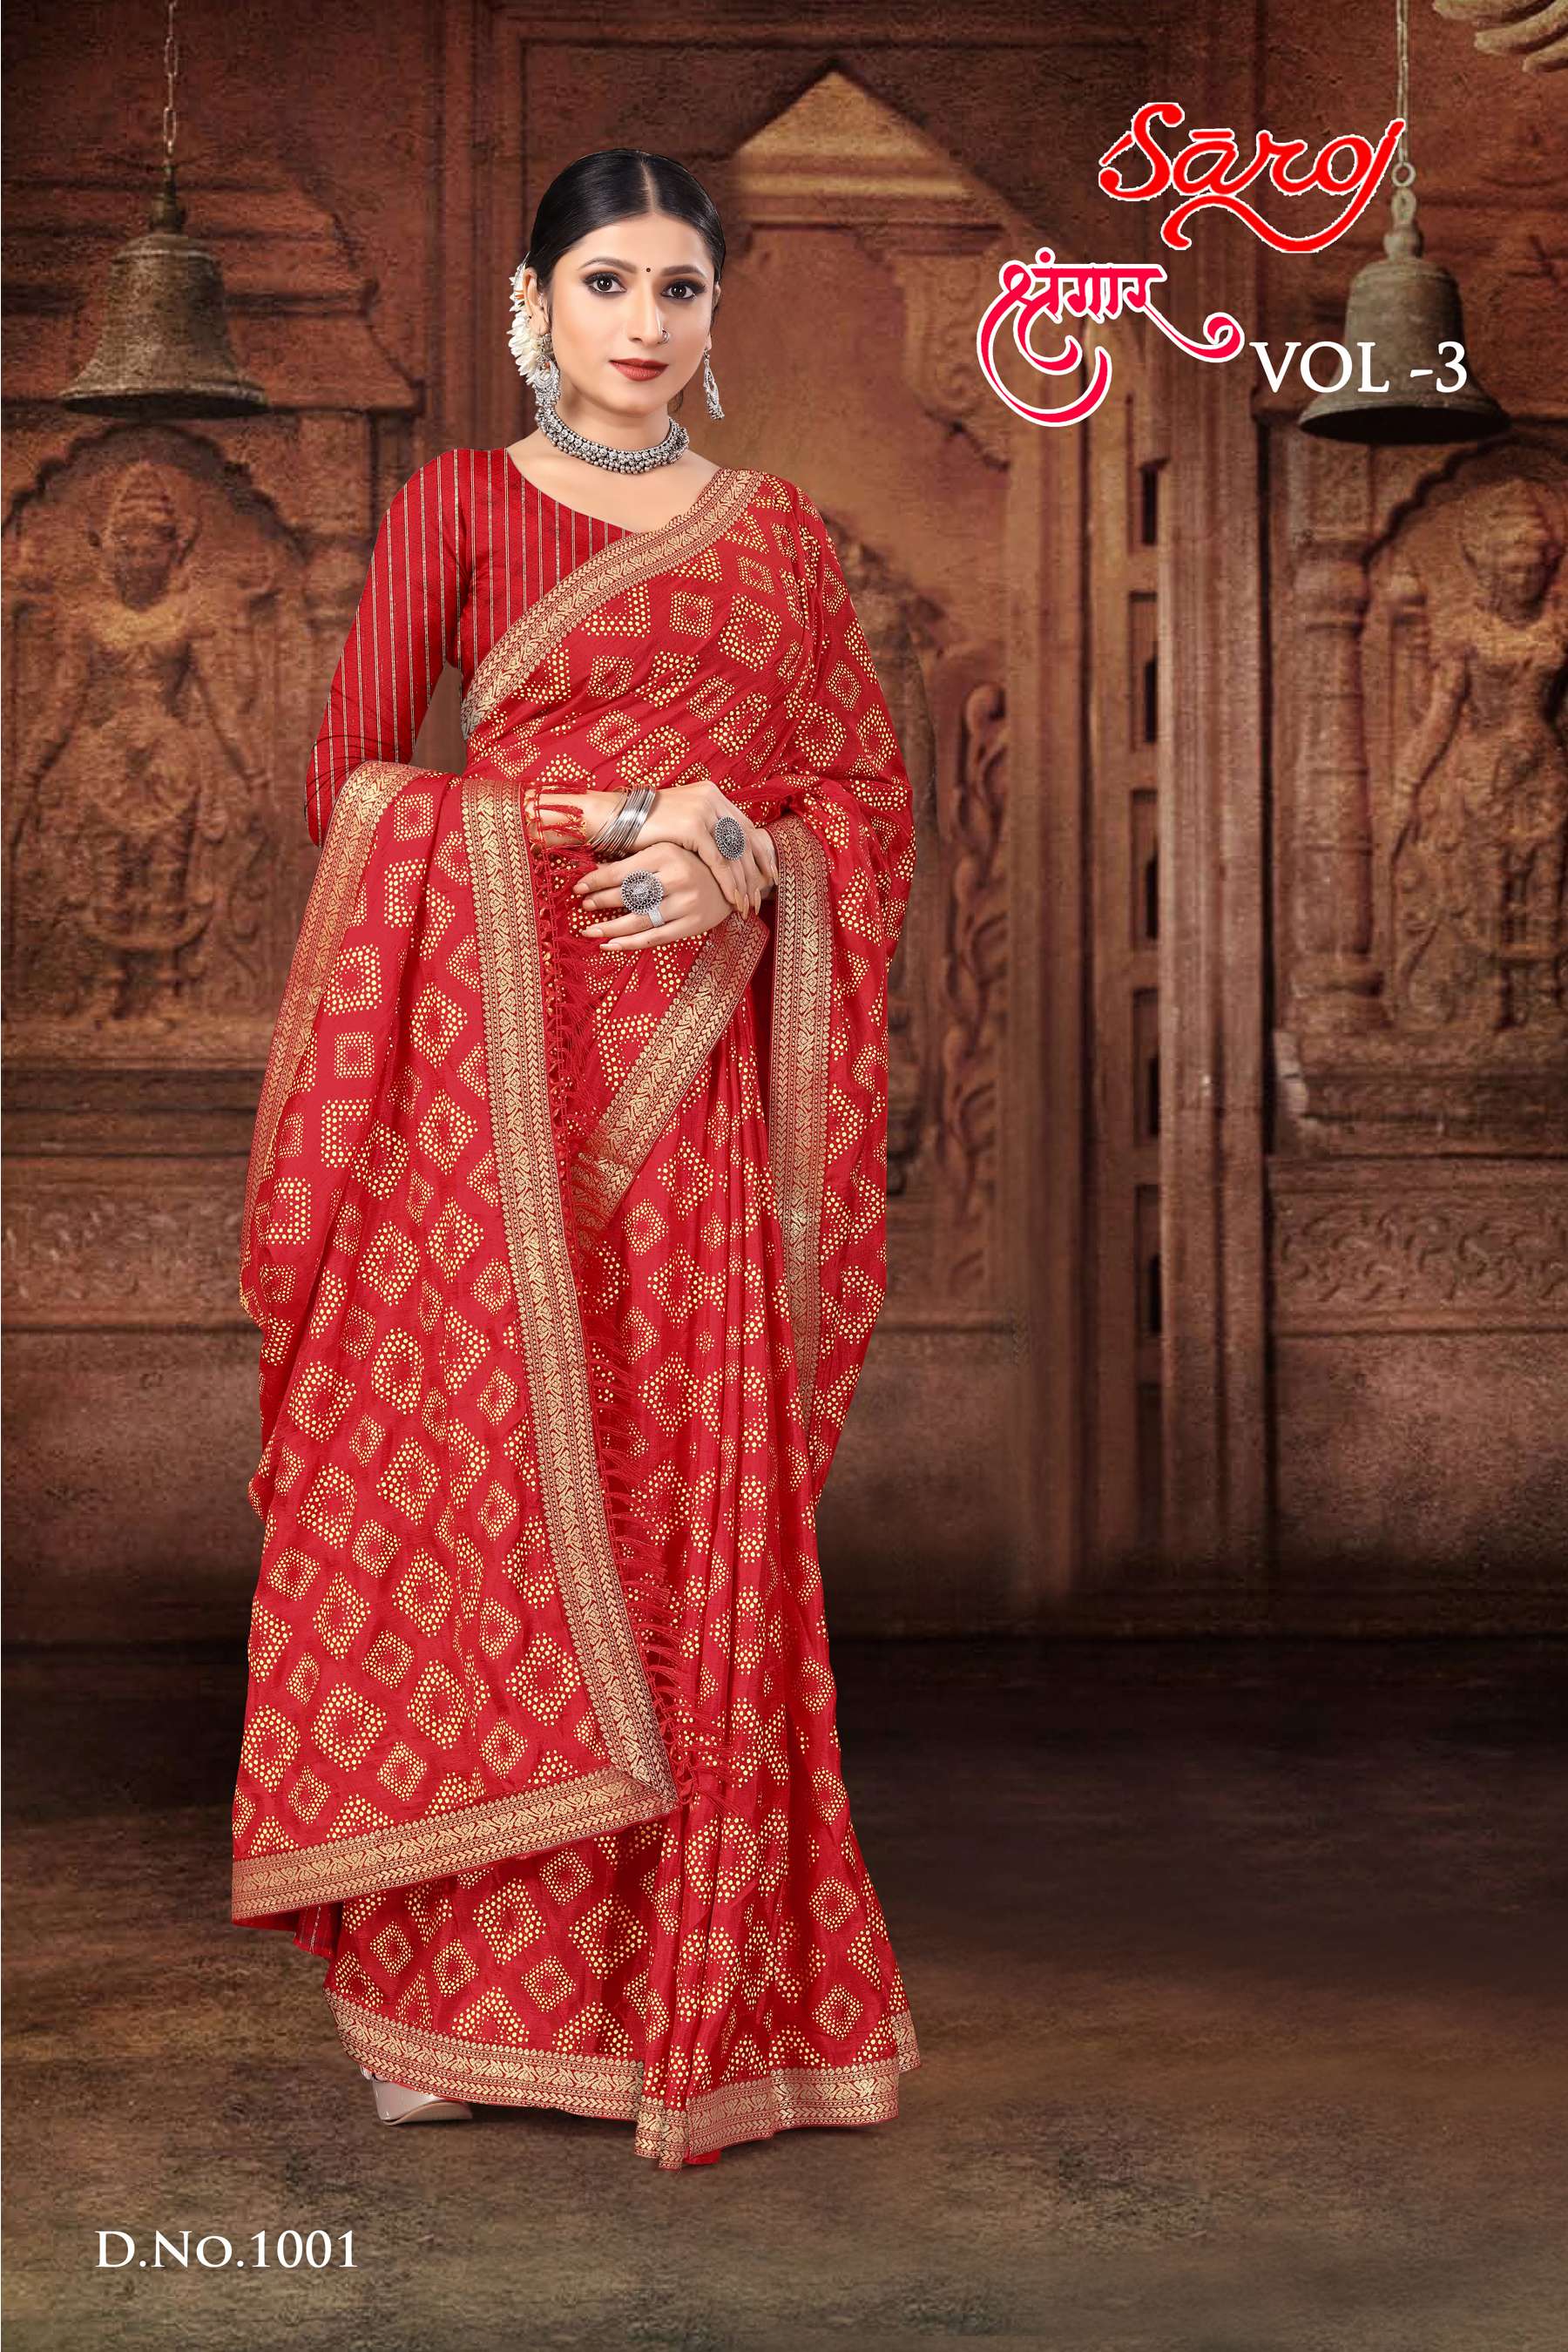 Saroj textile presents Shrungaar vol 3 casual sarees catalogue